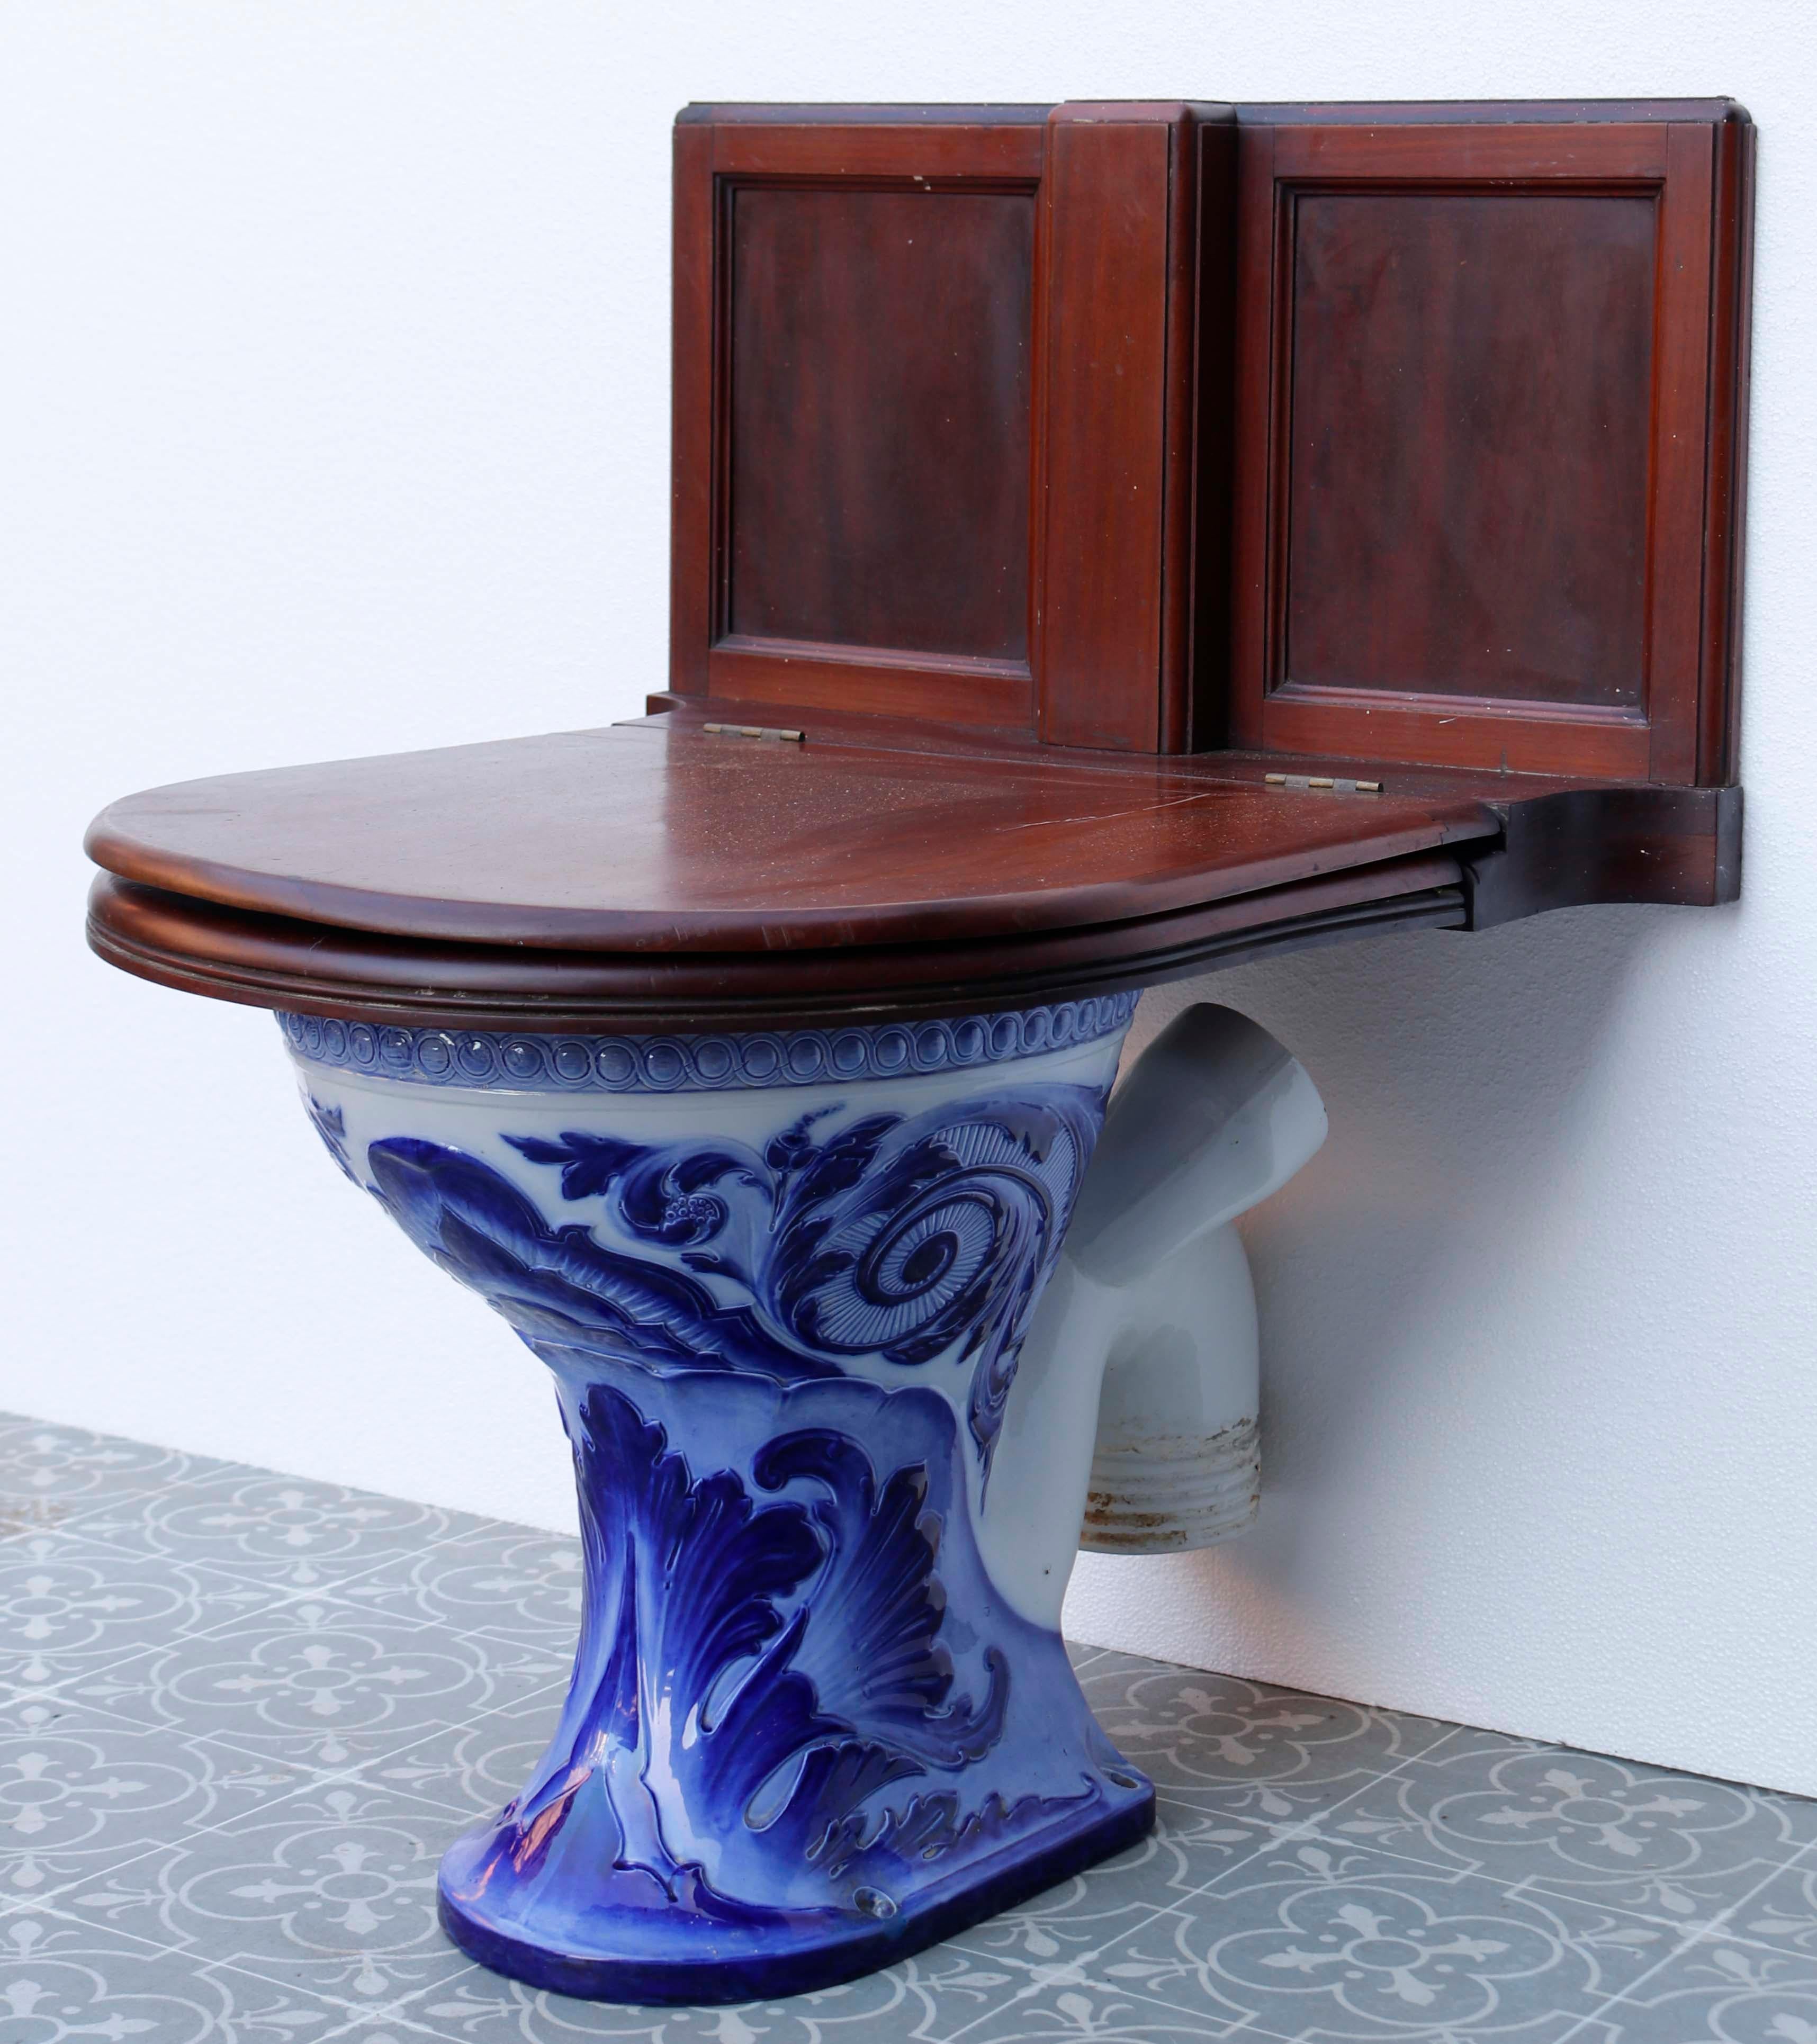 Antique Doulton and Co Glazed toilet. Une toilette en porcelaine émaillée bleue avec des figures originales proéminentes. Le siège en acajou s'harmonise avec les toilettes en porcelaine bleue et blanche qui se trouvent en dessous, donnant vie au